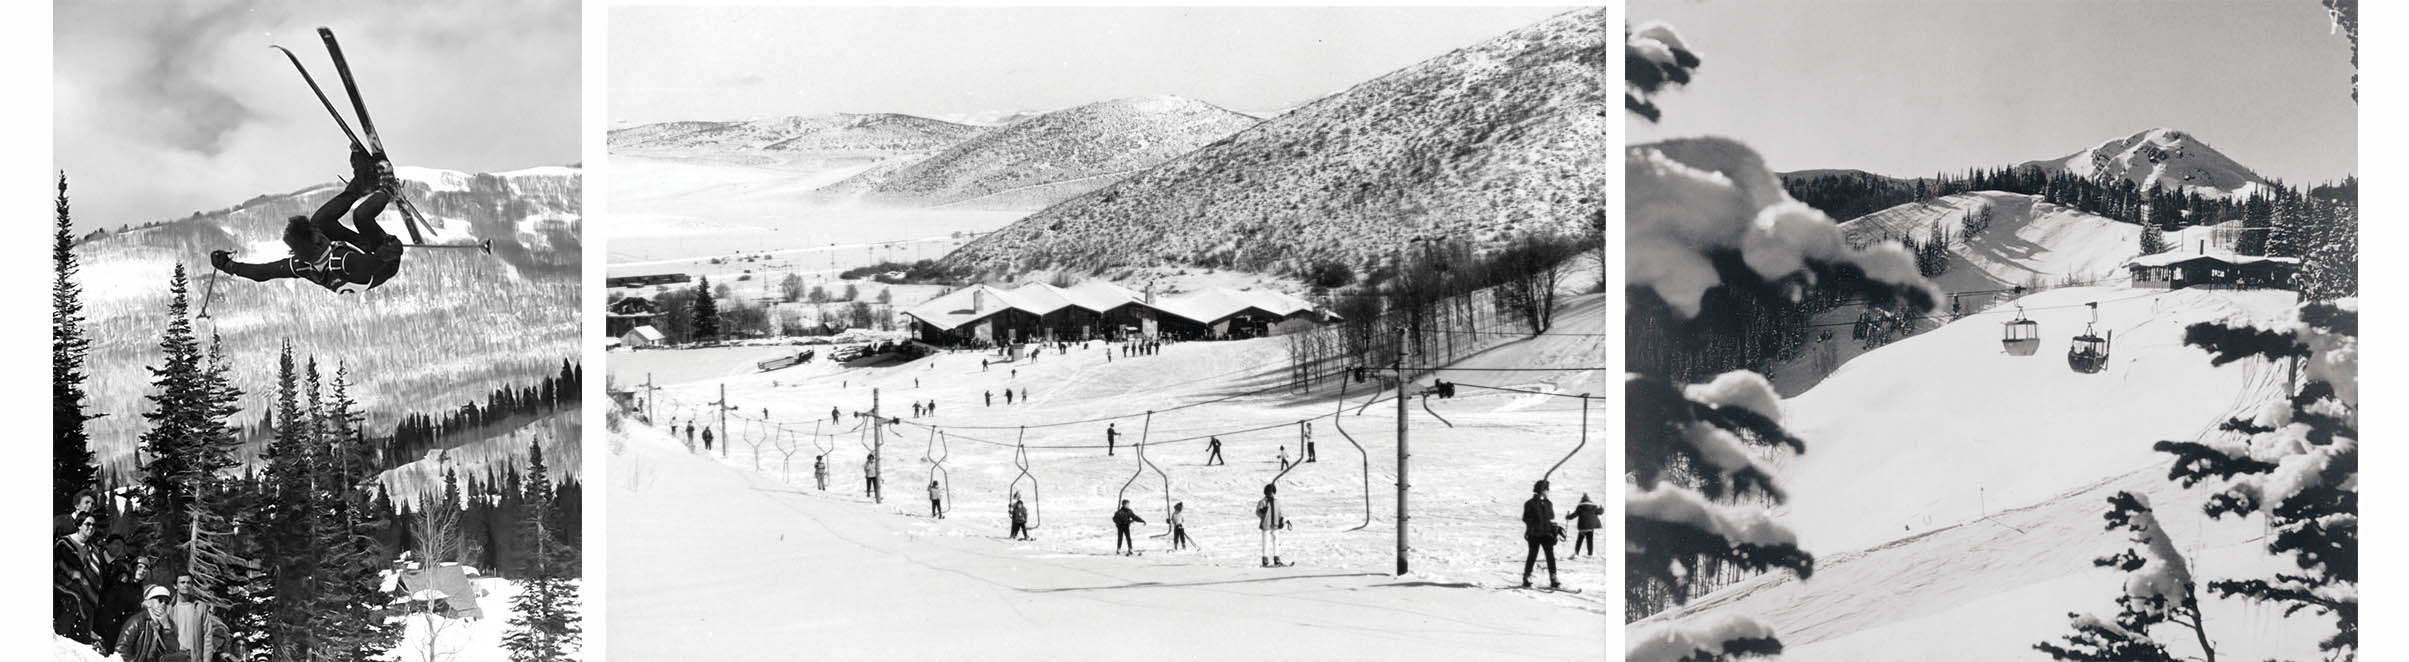 fotos históricas de park city como ski resort